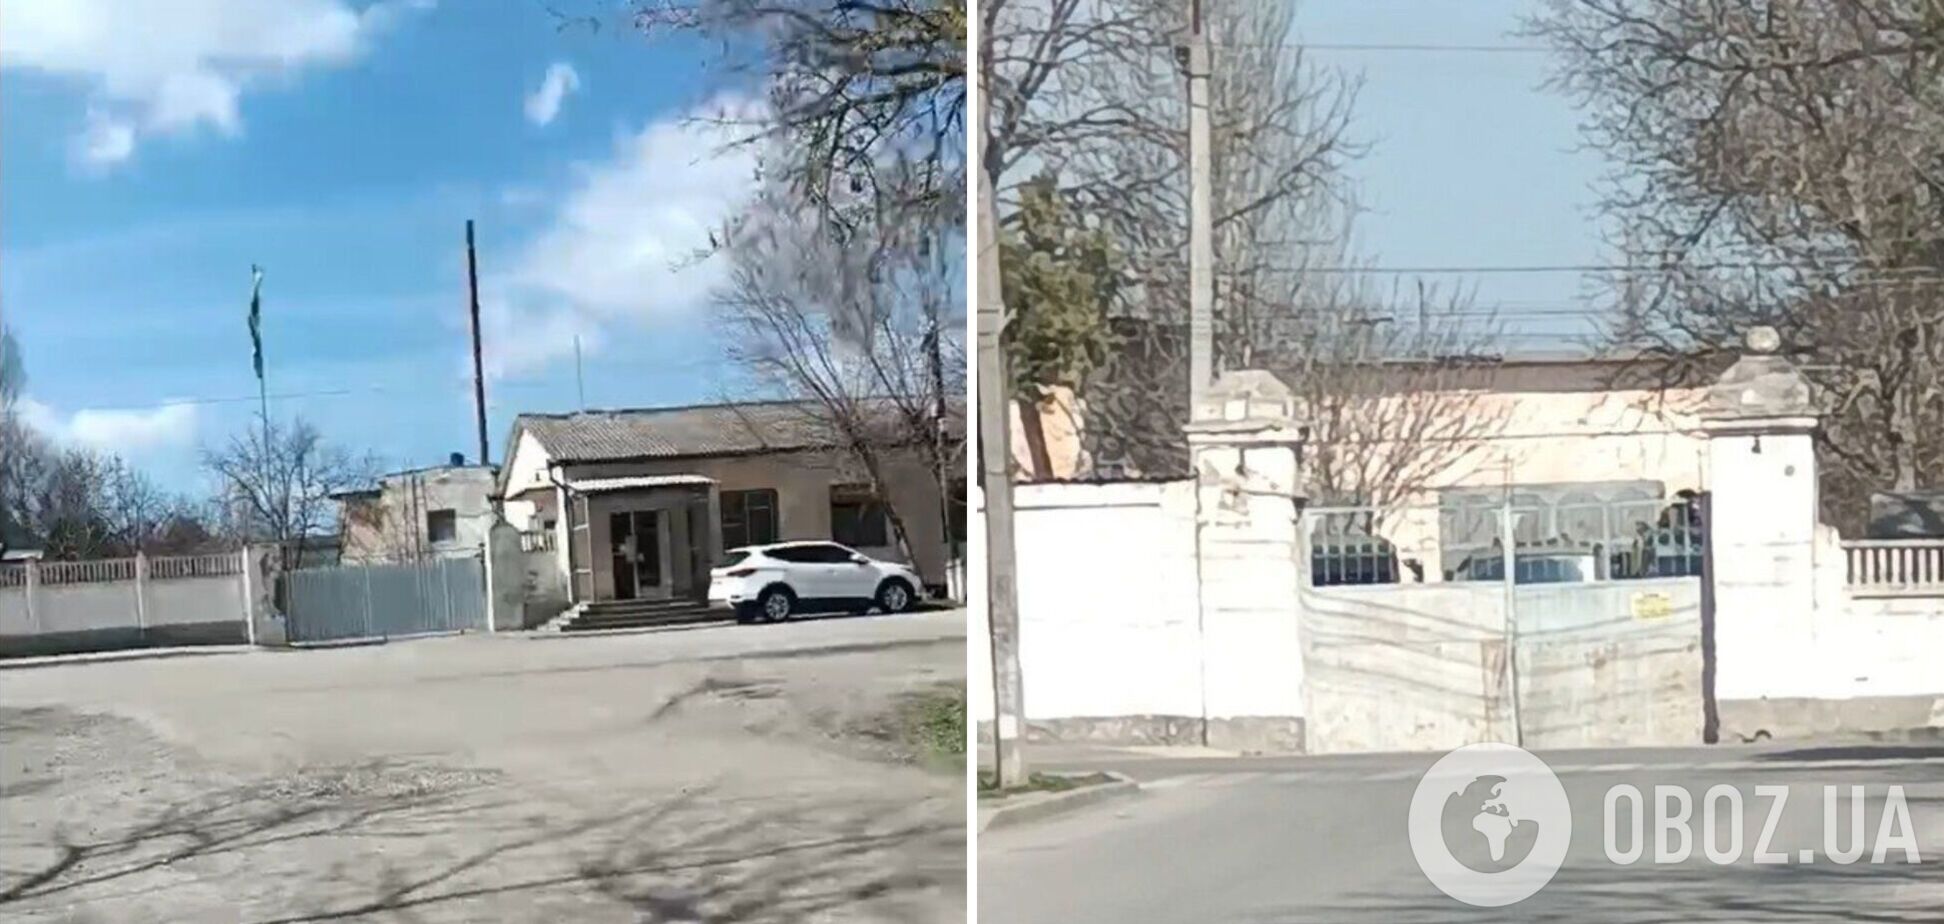 Створили фальшивий об'єкт? В 'Атеш' розкрили дані про переміщення окупантами техніки в Криму. Фото